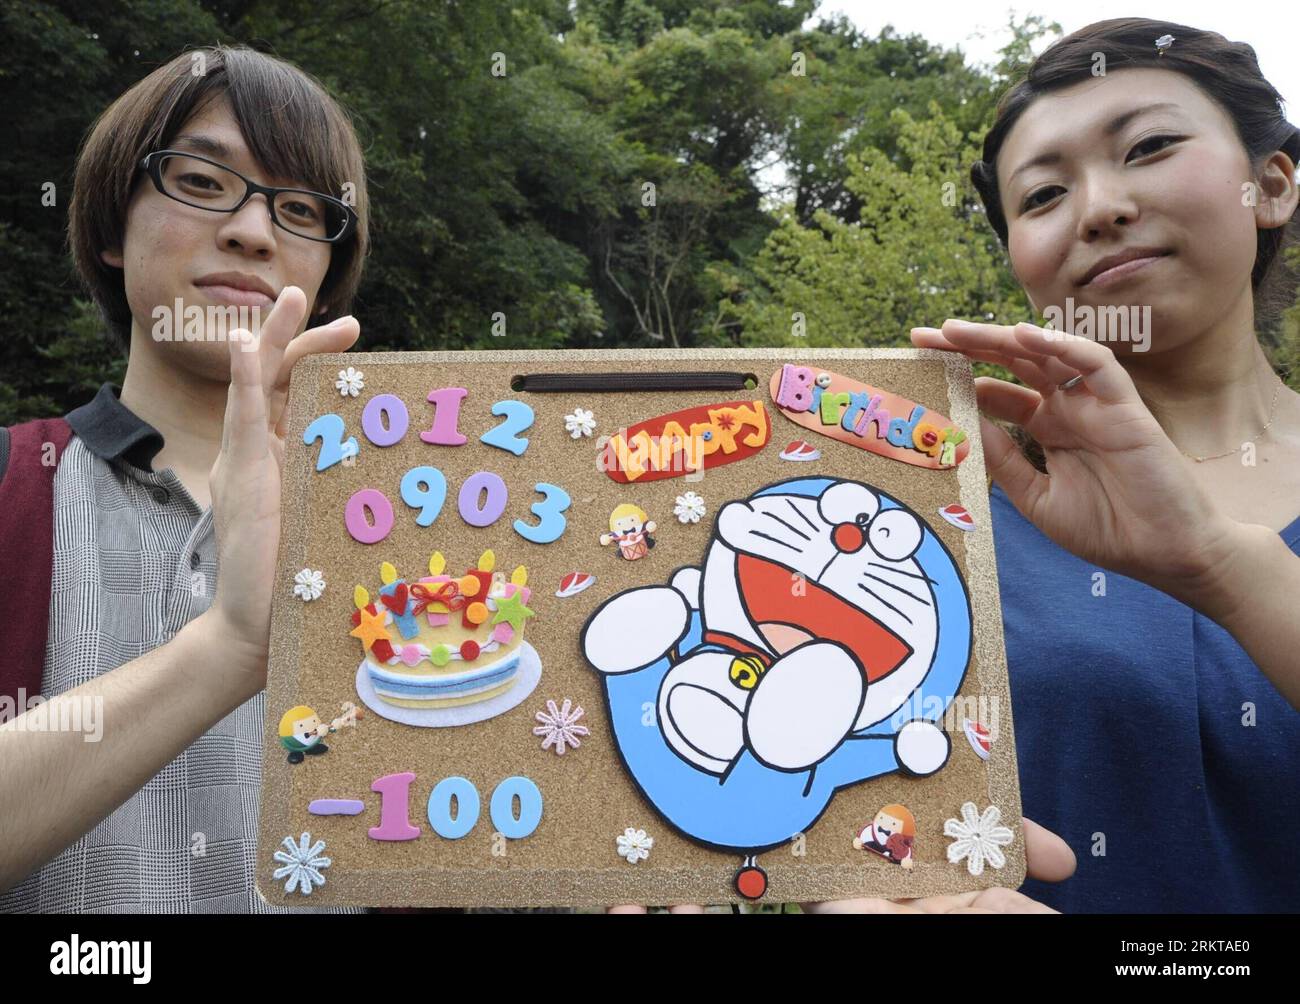 Bildnummer: 58423631 Datum: 03.09.2012 Copyright: imago/Xinhua (120903) -- KAWASAKI, 3. September 2012 (Xinhua) -- Fans zeigen Doraemon während einer Feier am 100. September vor Doraemons Geburt im Fujiko F. Fujio Museum in Kawasaki, Japan, 3. September 2012 ein Geburtstagskartenstück. Doraemon ist eine japanische Zeichentrickfigur, die von Fujikon F. Fujio geschaffen wurde. Doraemon wurde am 3. September 2112 geboren. (Xinhua/Kenichiro Seki) (psw) JAPAN-KAWASAKI-DORAEMON-CELEBRATION PUBLICATIONxNOTxINxCHN Entertainment Kultur Popkultur Comic Comicfigur Jubiläum Feier Objekt x0x xdd 2012 quer Stockfoto